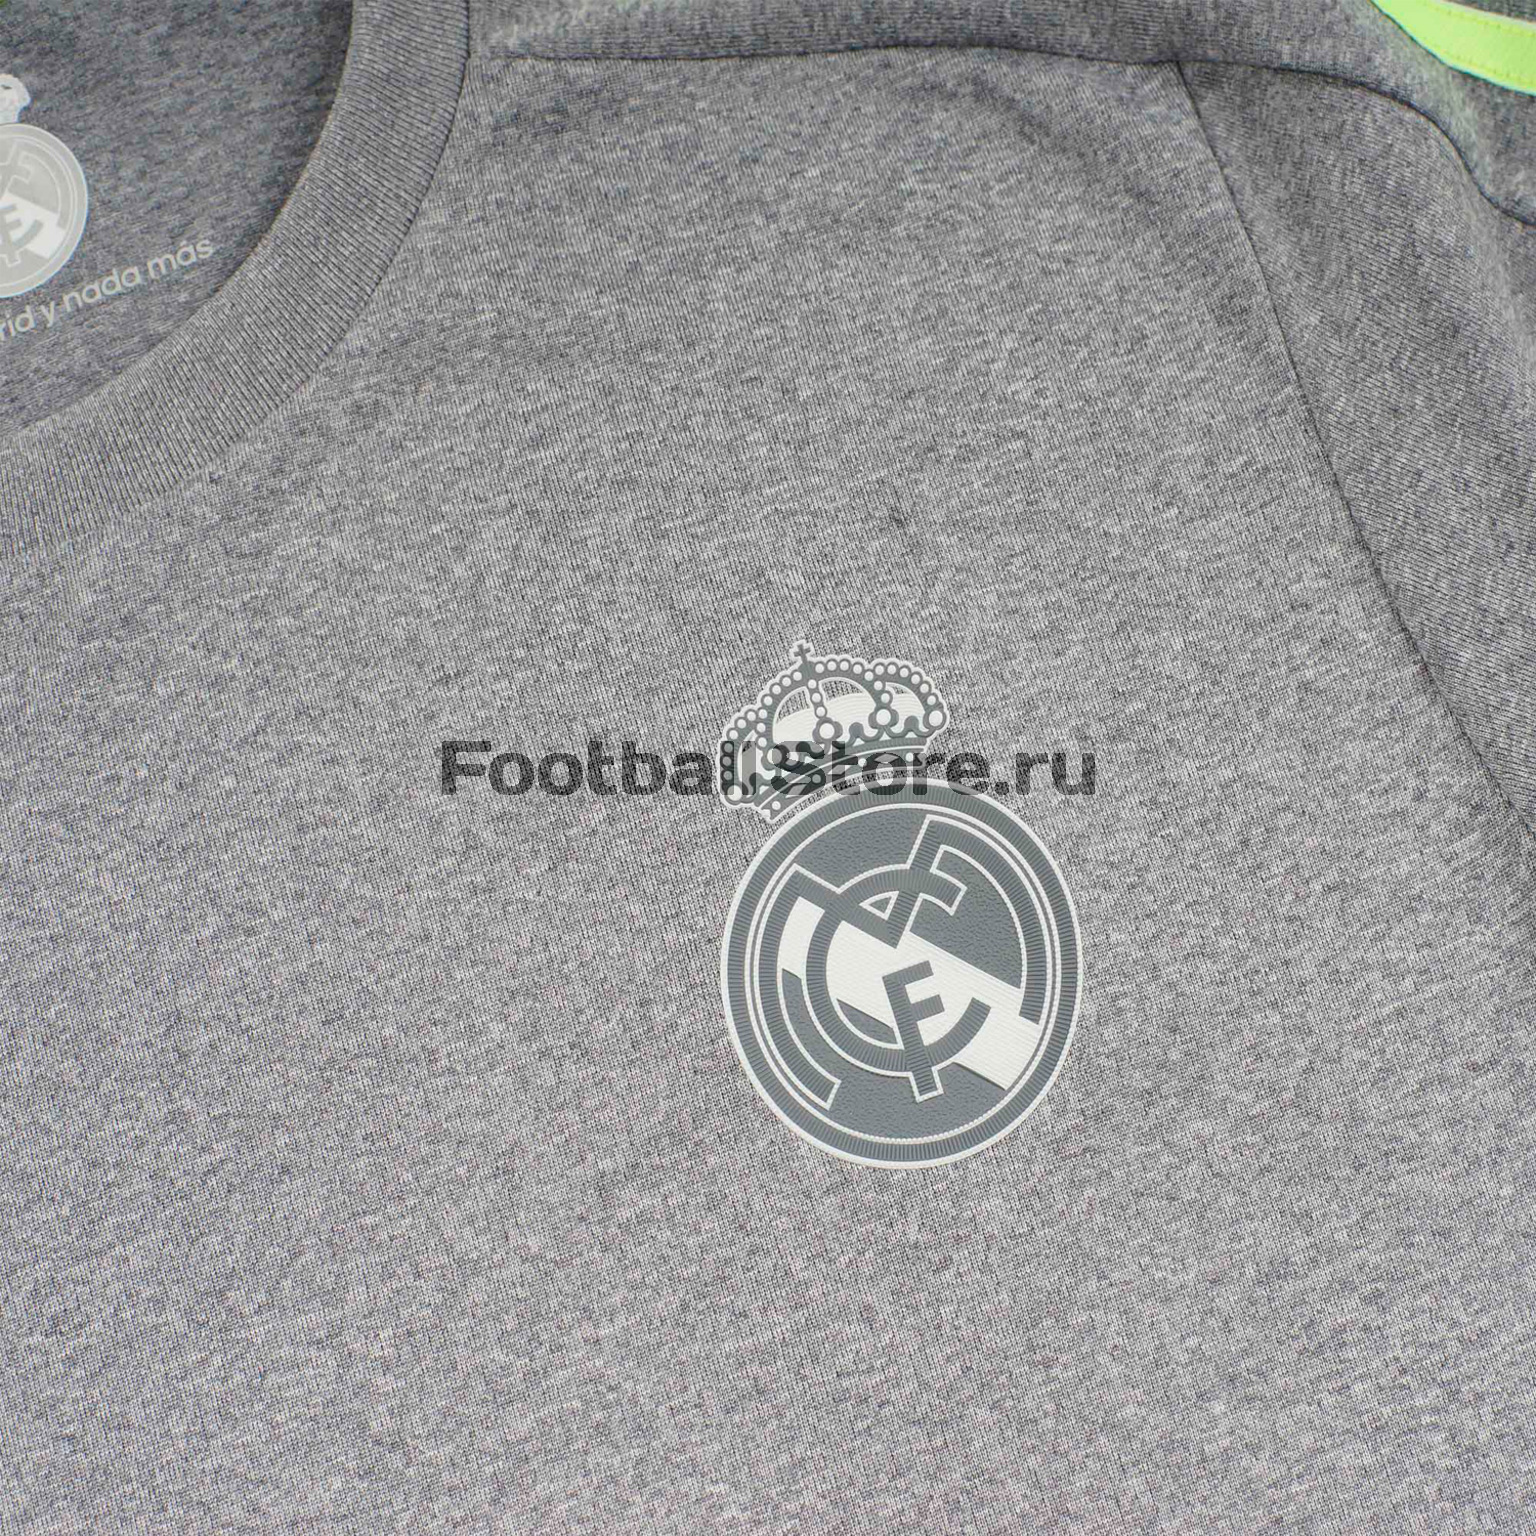 Футболка игровая Adidas Madrid Away JSY – купить в интернет магазине footballstore, цена, фото